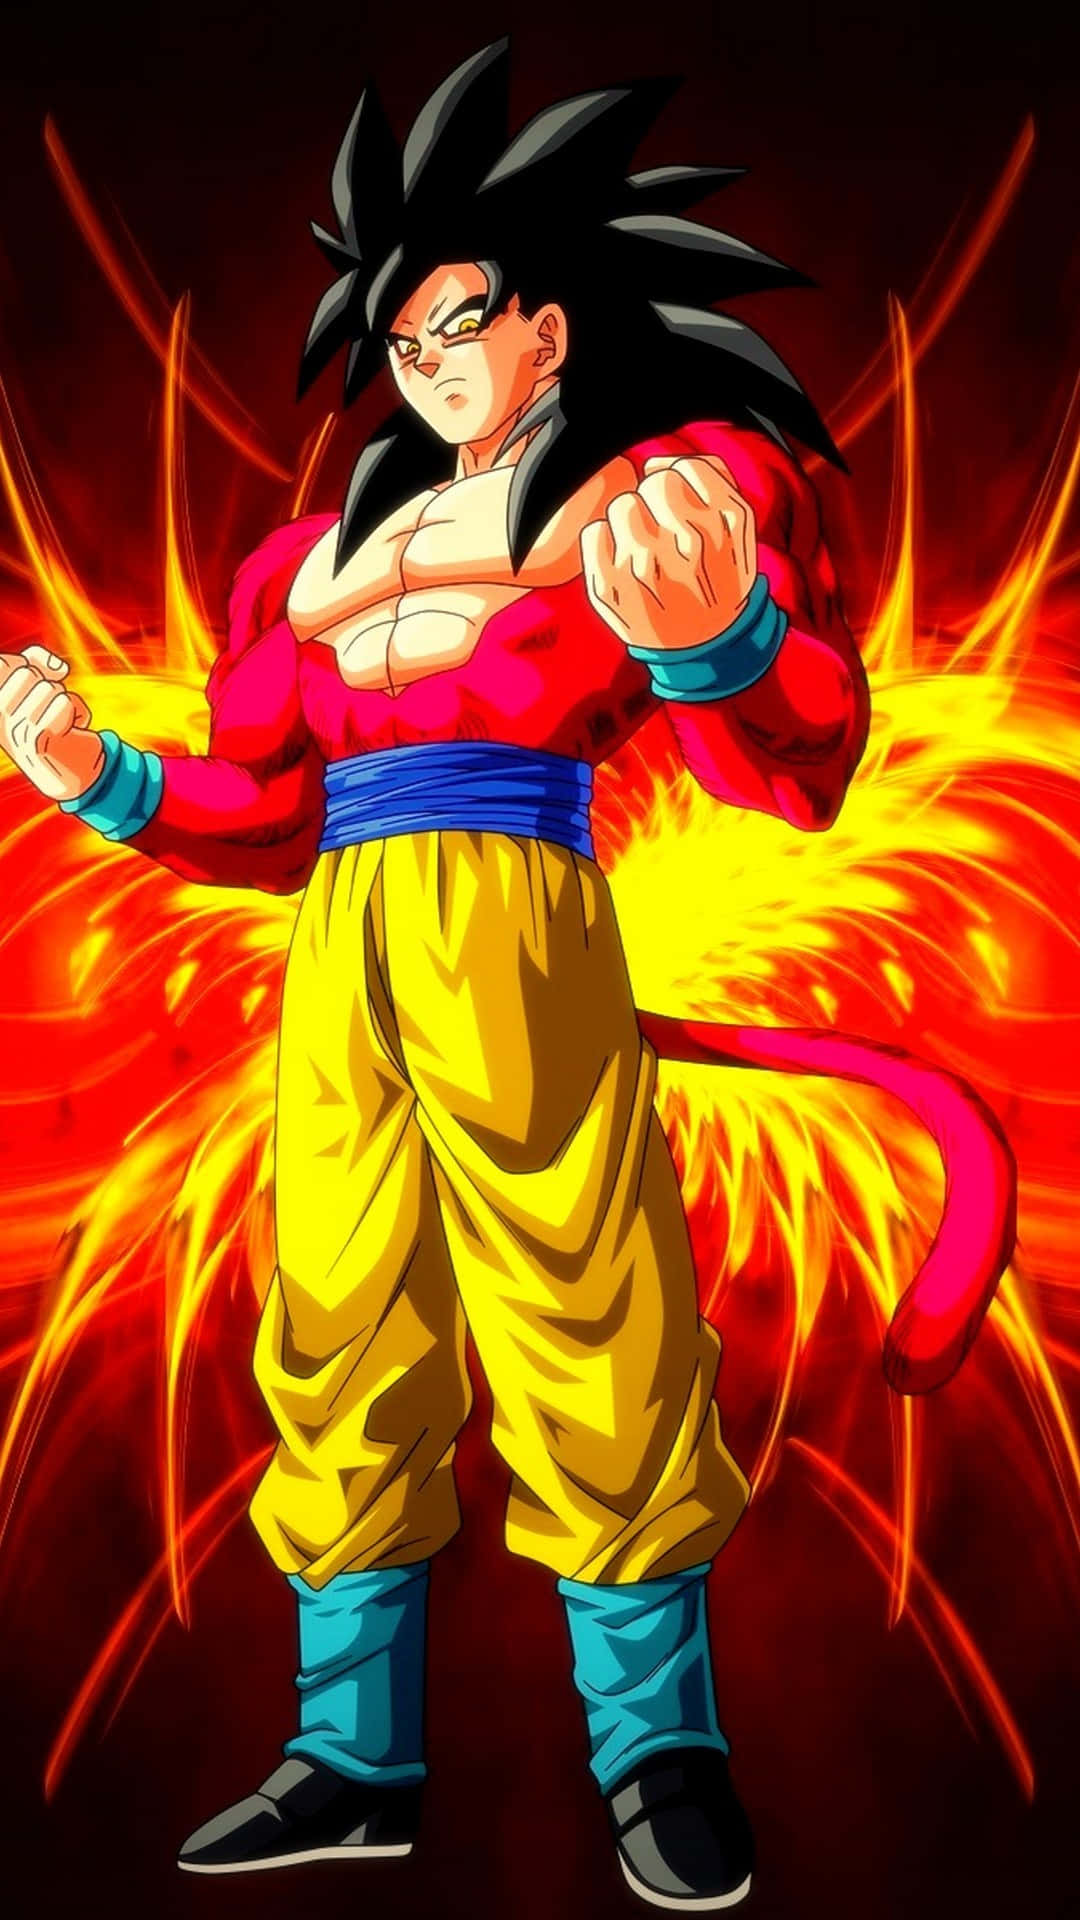 "Goku Super Saiyan 4 in Action" Wallpaper